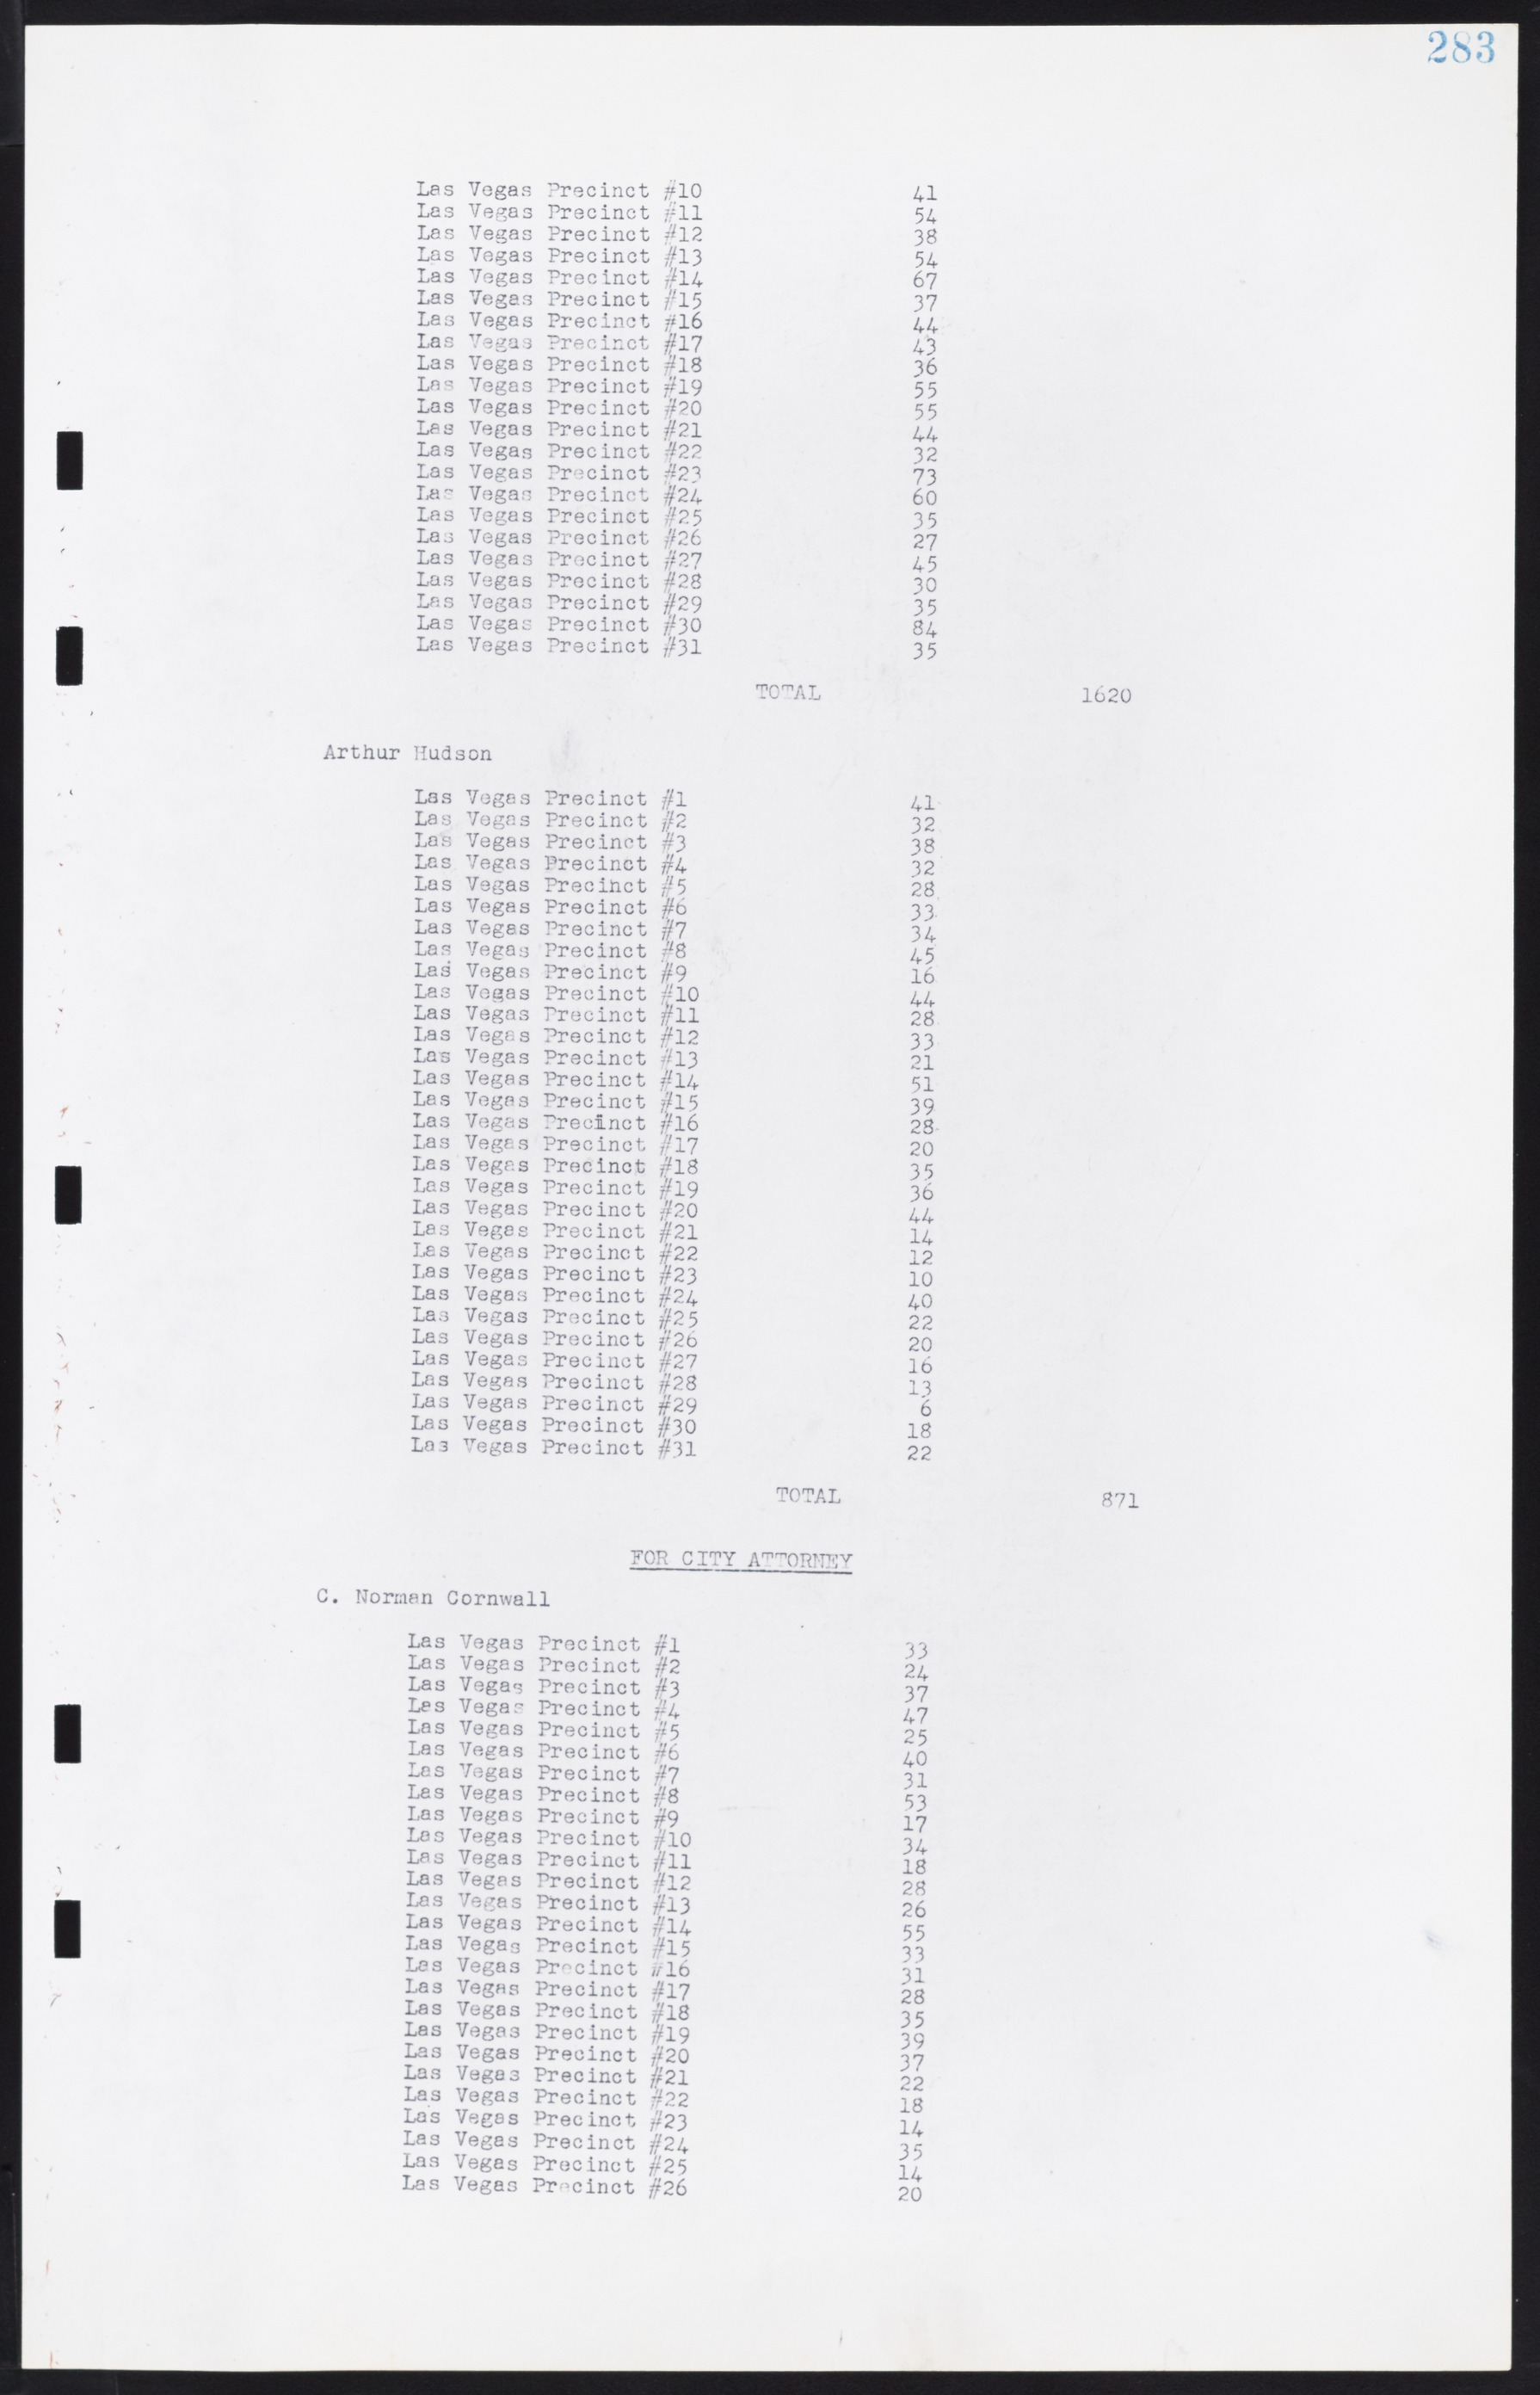 Las Vegas City Commission Minutes, August 11, 1942 to December 30, 1946, lvc000005-305